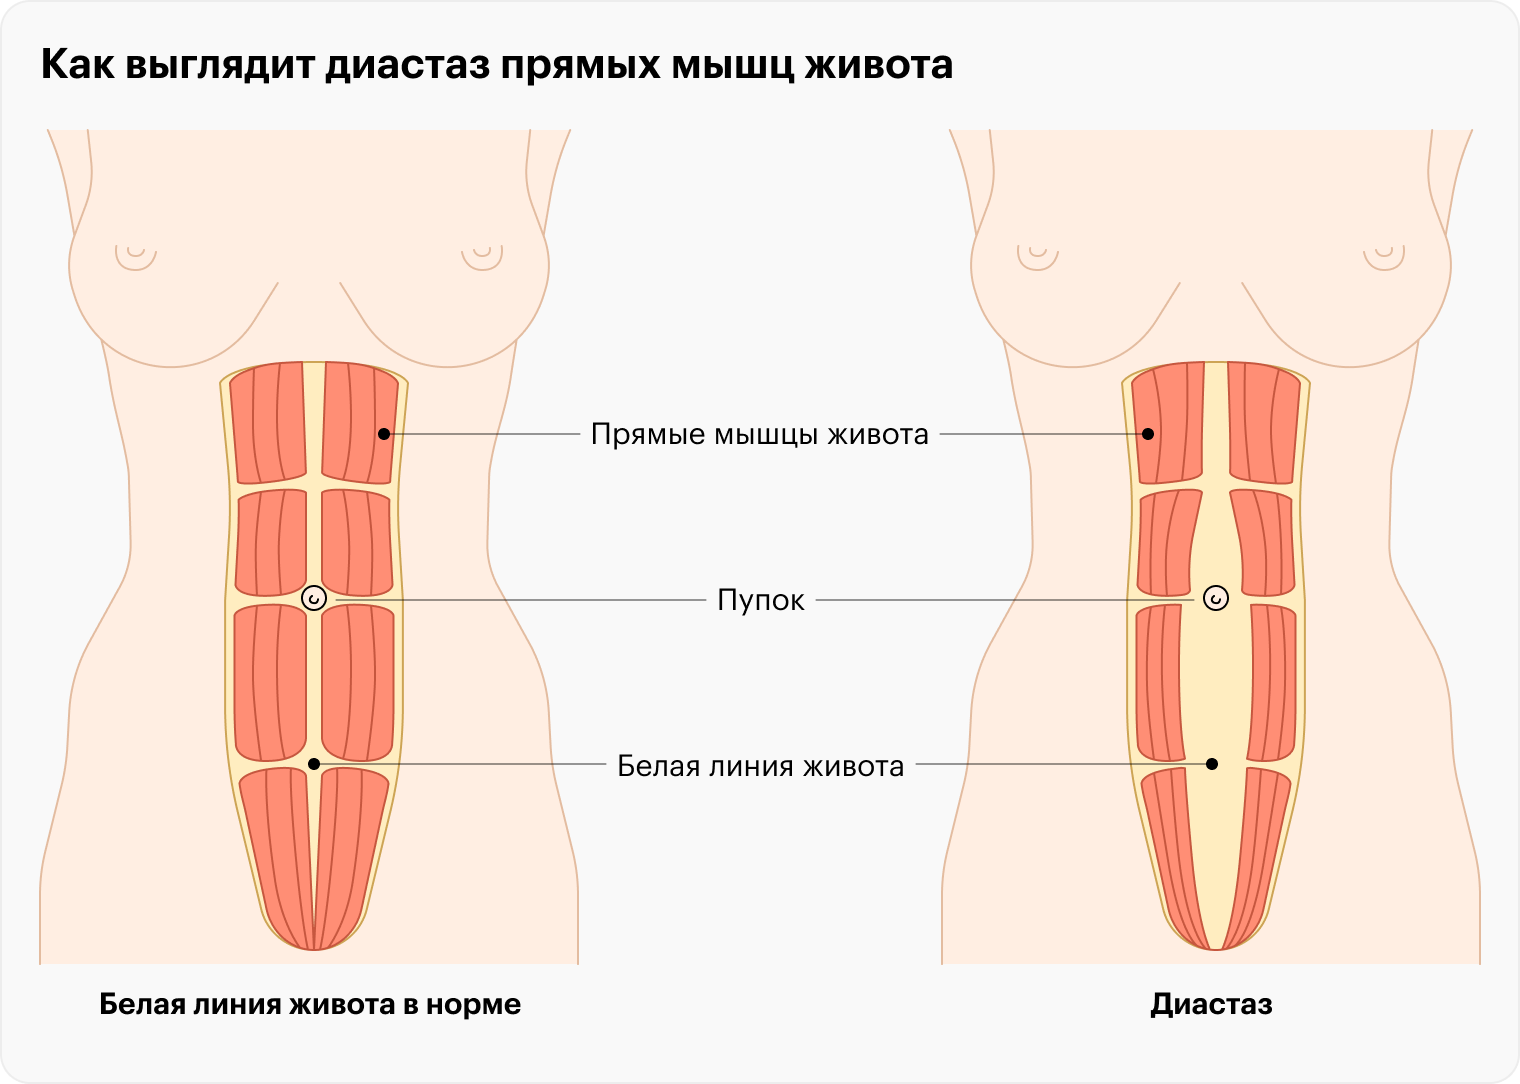 При диастазе происходит аномальное расхождение прямых мышц живота. Оно может быть над пупком, под ним, или сверху и снизу пупка одновременно